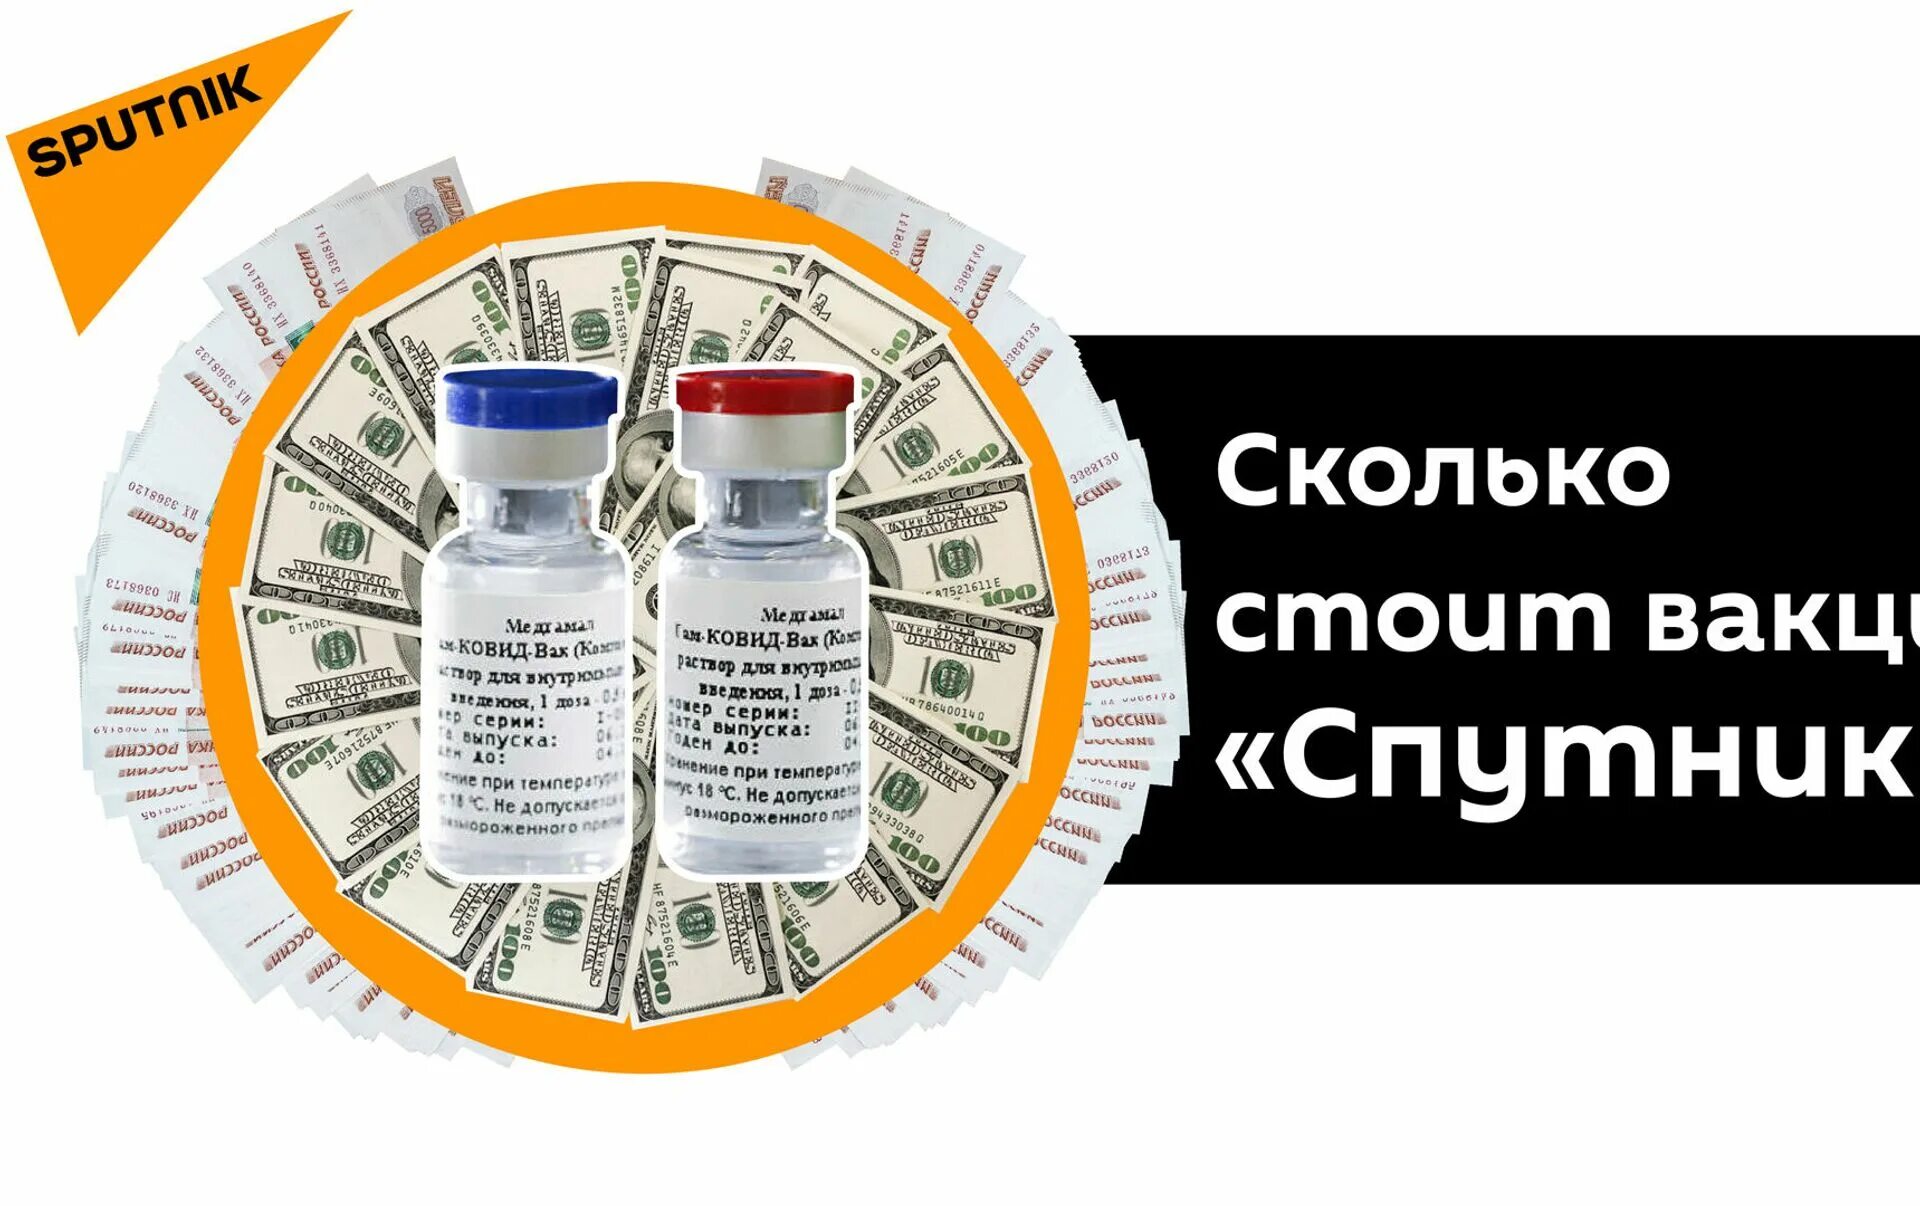 Вакцины 2020. Цены на лекарства Sputnik. Низкие цены на лекарства. Низкая стоимость препарата.